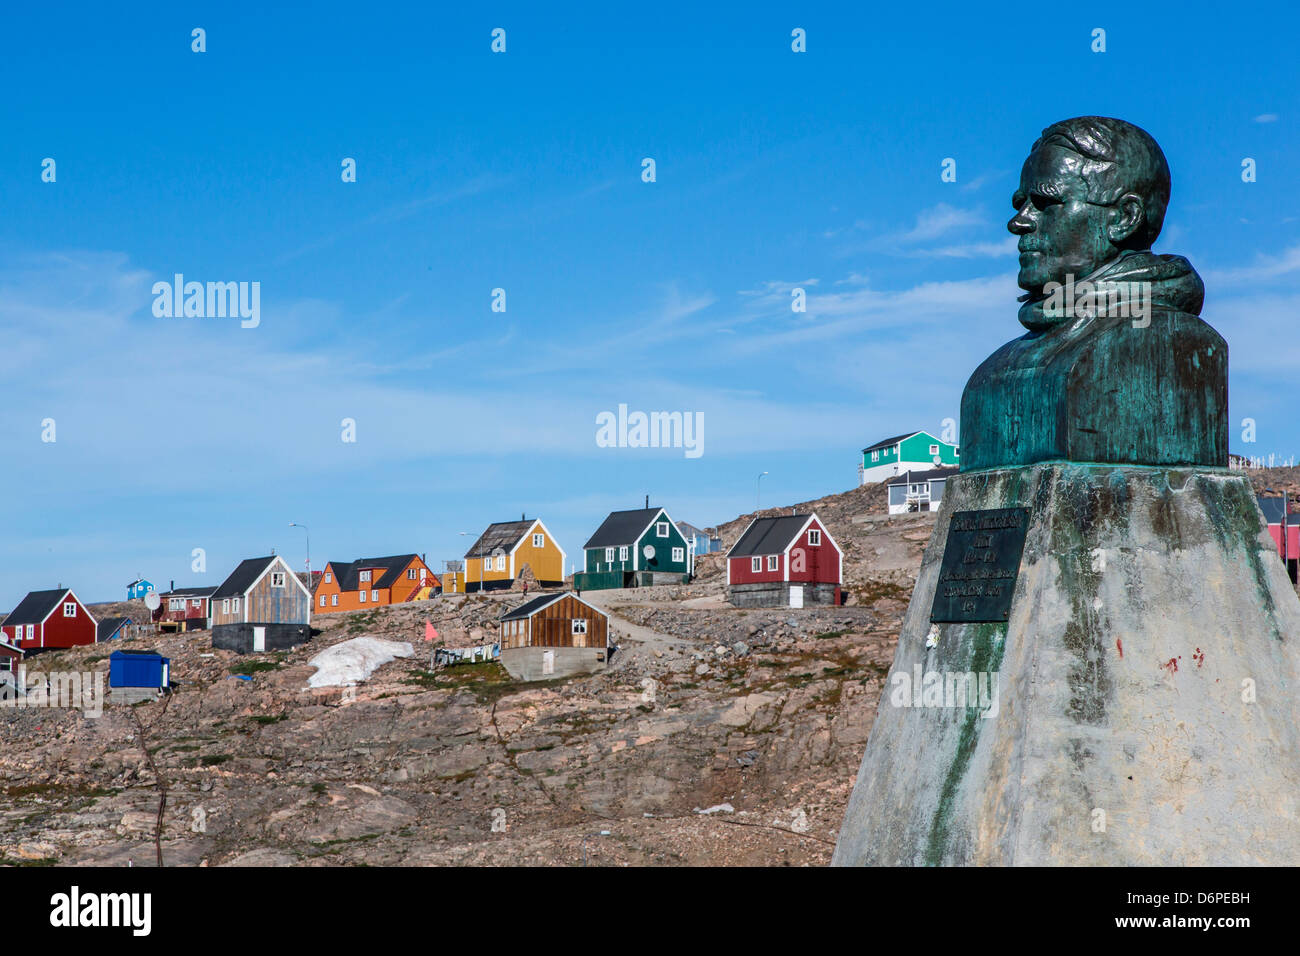 Village inuit et Ejnar Mikkelsen, Ittoqqortoormiit Scoresbysund, statue, au nord-est du Groenland, les régions polaires Banque D'Images